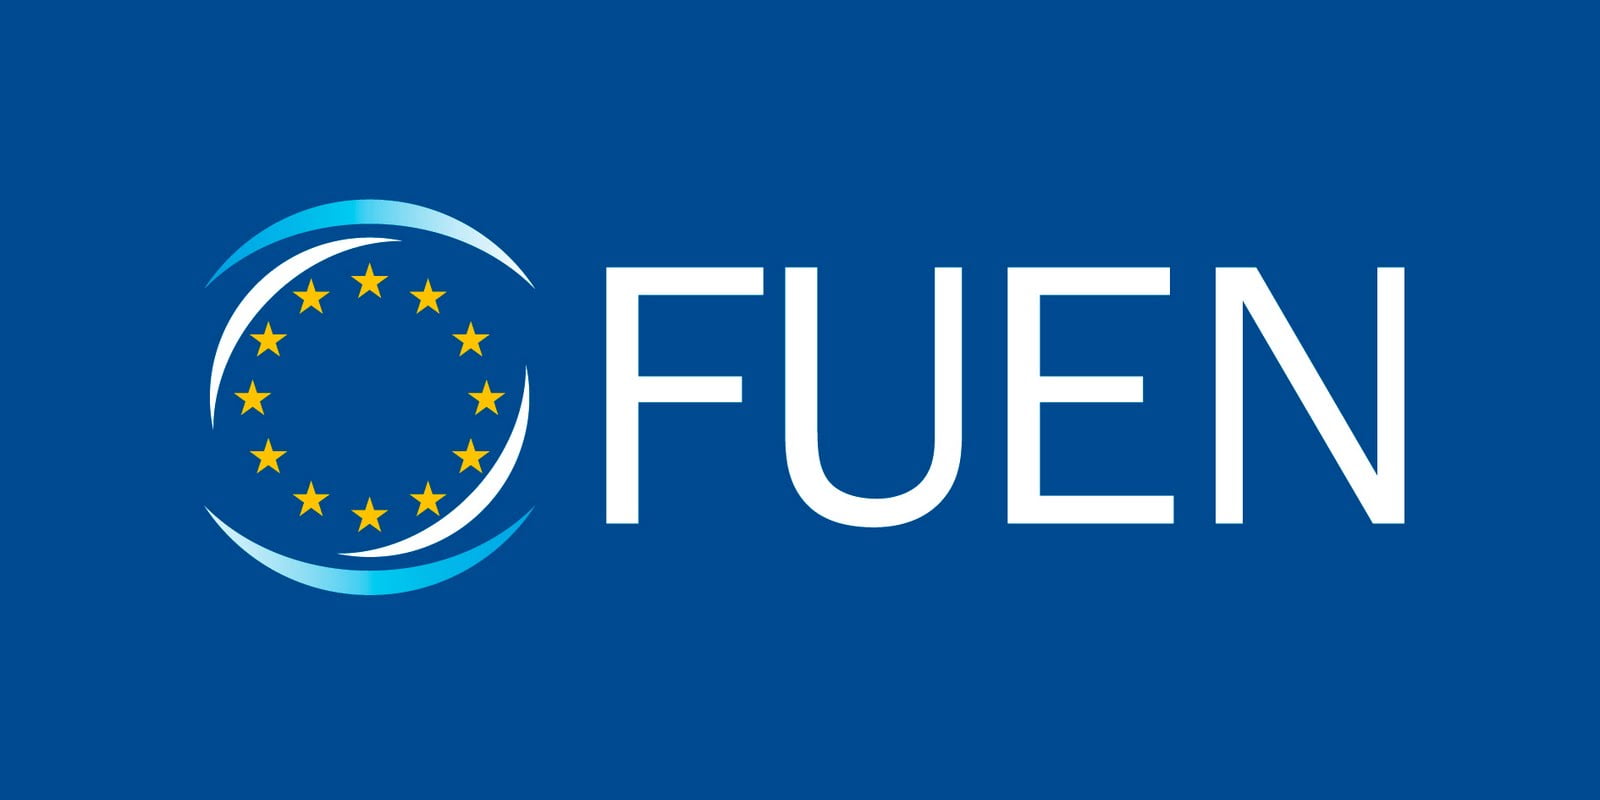 Συνέδριο της Ομοσπονδιακής Ένωσης Εθνοτήτων Ευρώπης (FUEN) στην Κομοτηνή στις 13-17 Μαΐου 2015